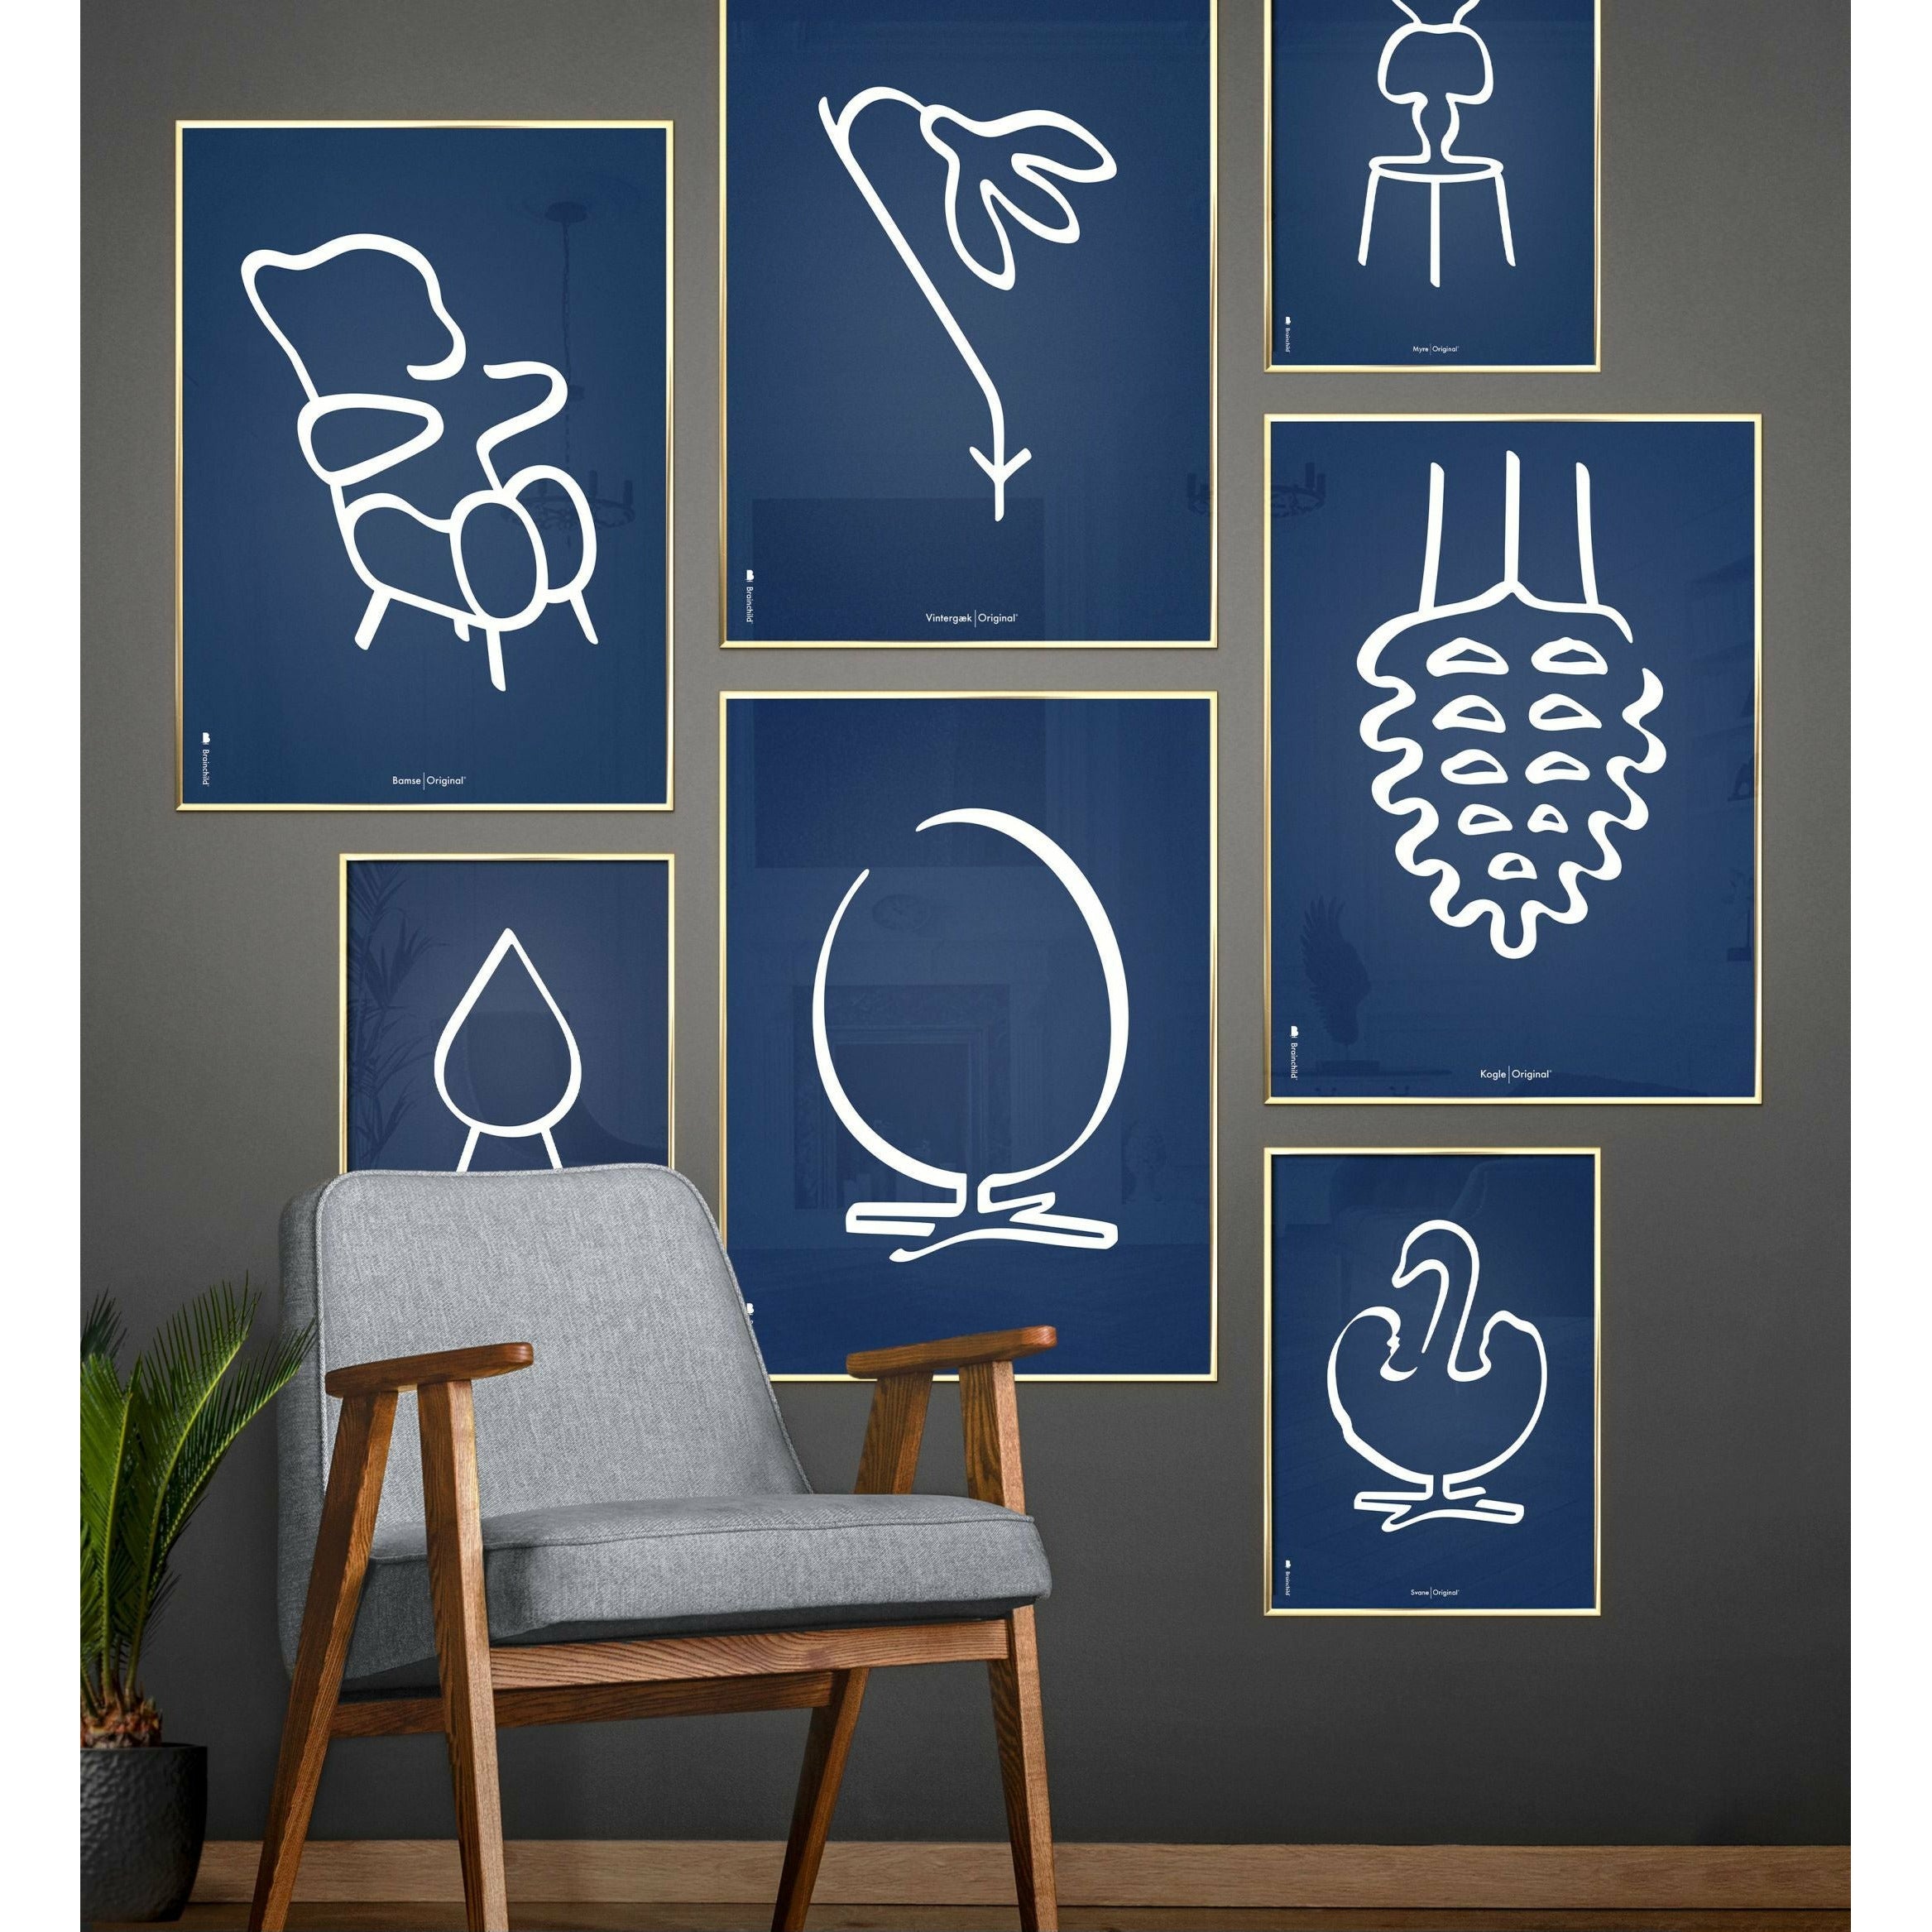 Pomysły plakat linii stożkowej bez ramy 70 x100 cm, niebieskie tło